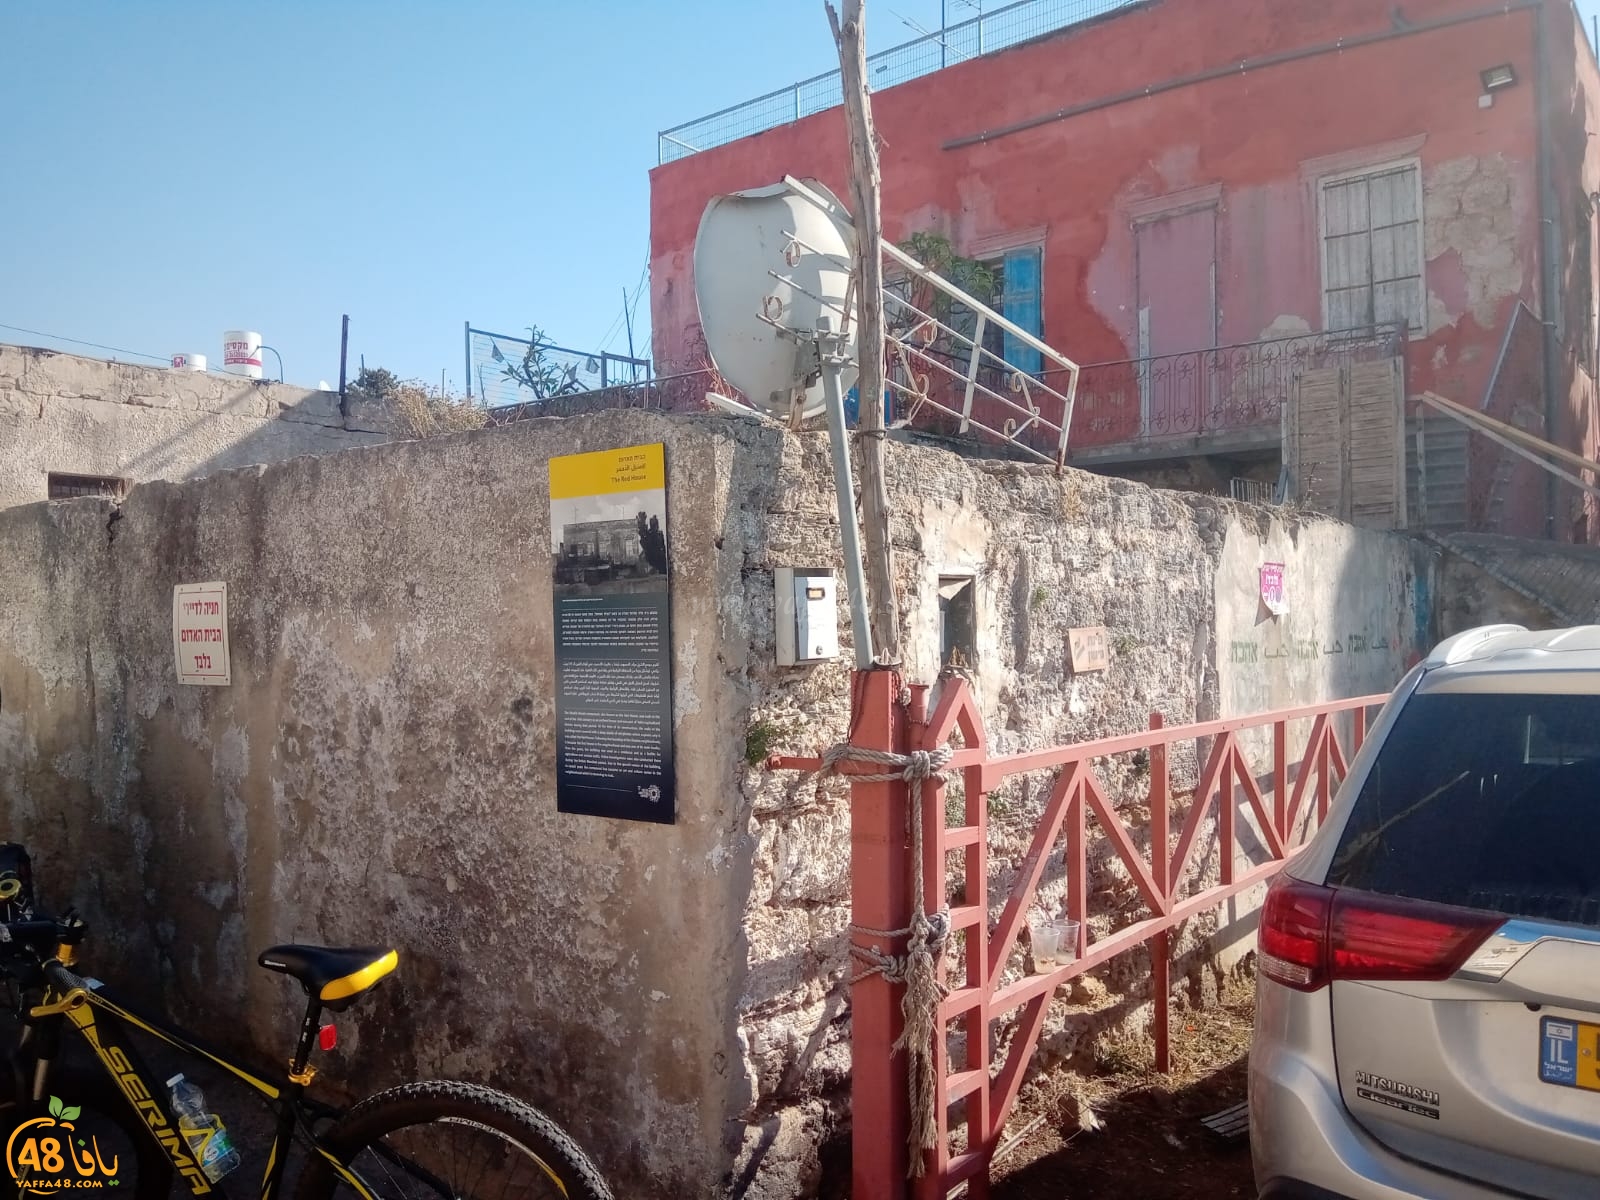  شاهد: هنا توقّف الزمان - روعة وضخامة البيت الأحمر بيت الشيخ مراد شرق يافا 